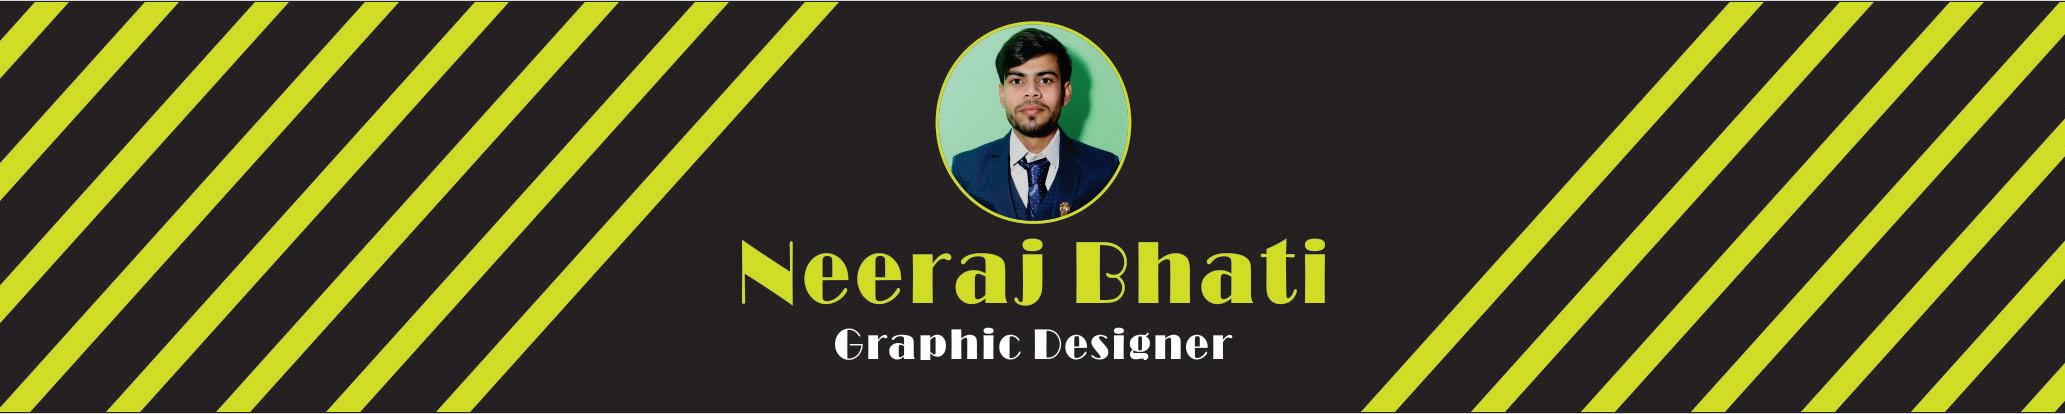 Neeraj Bhati profil başlığı